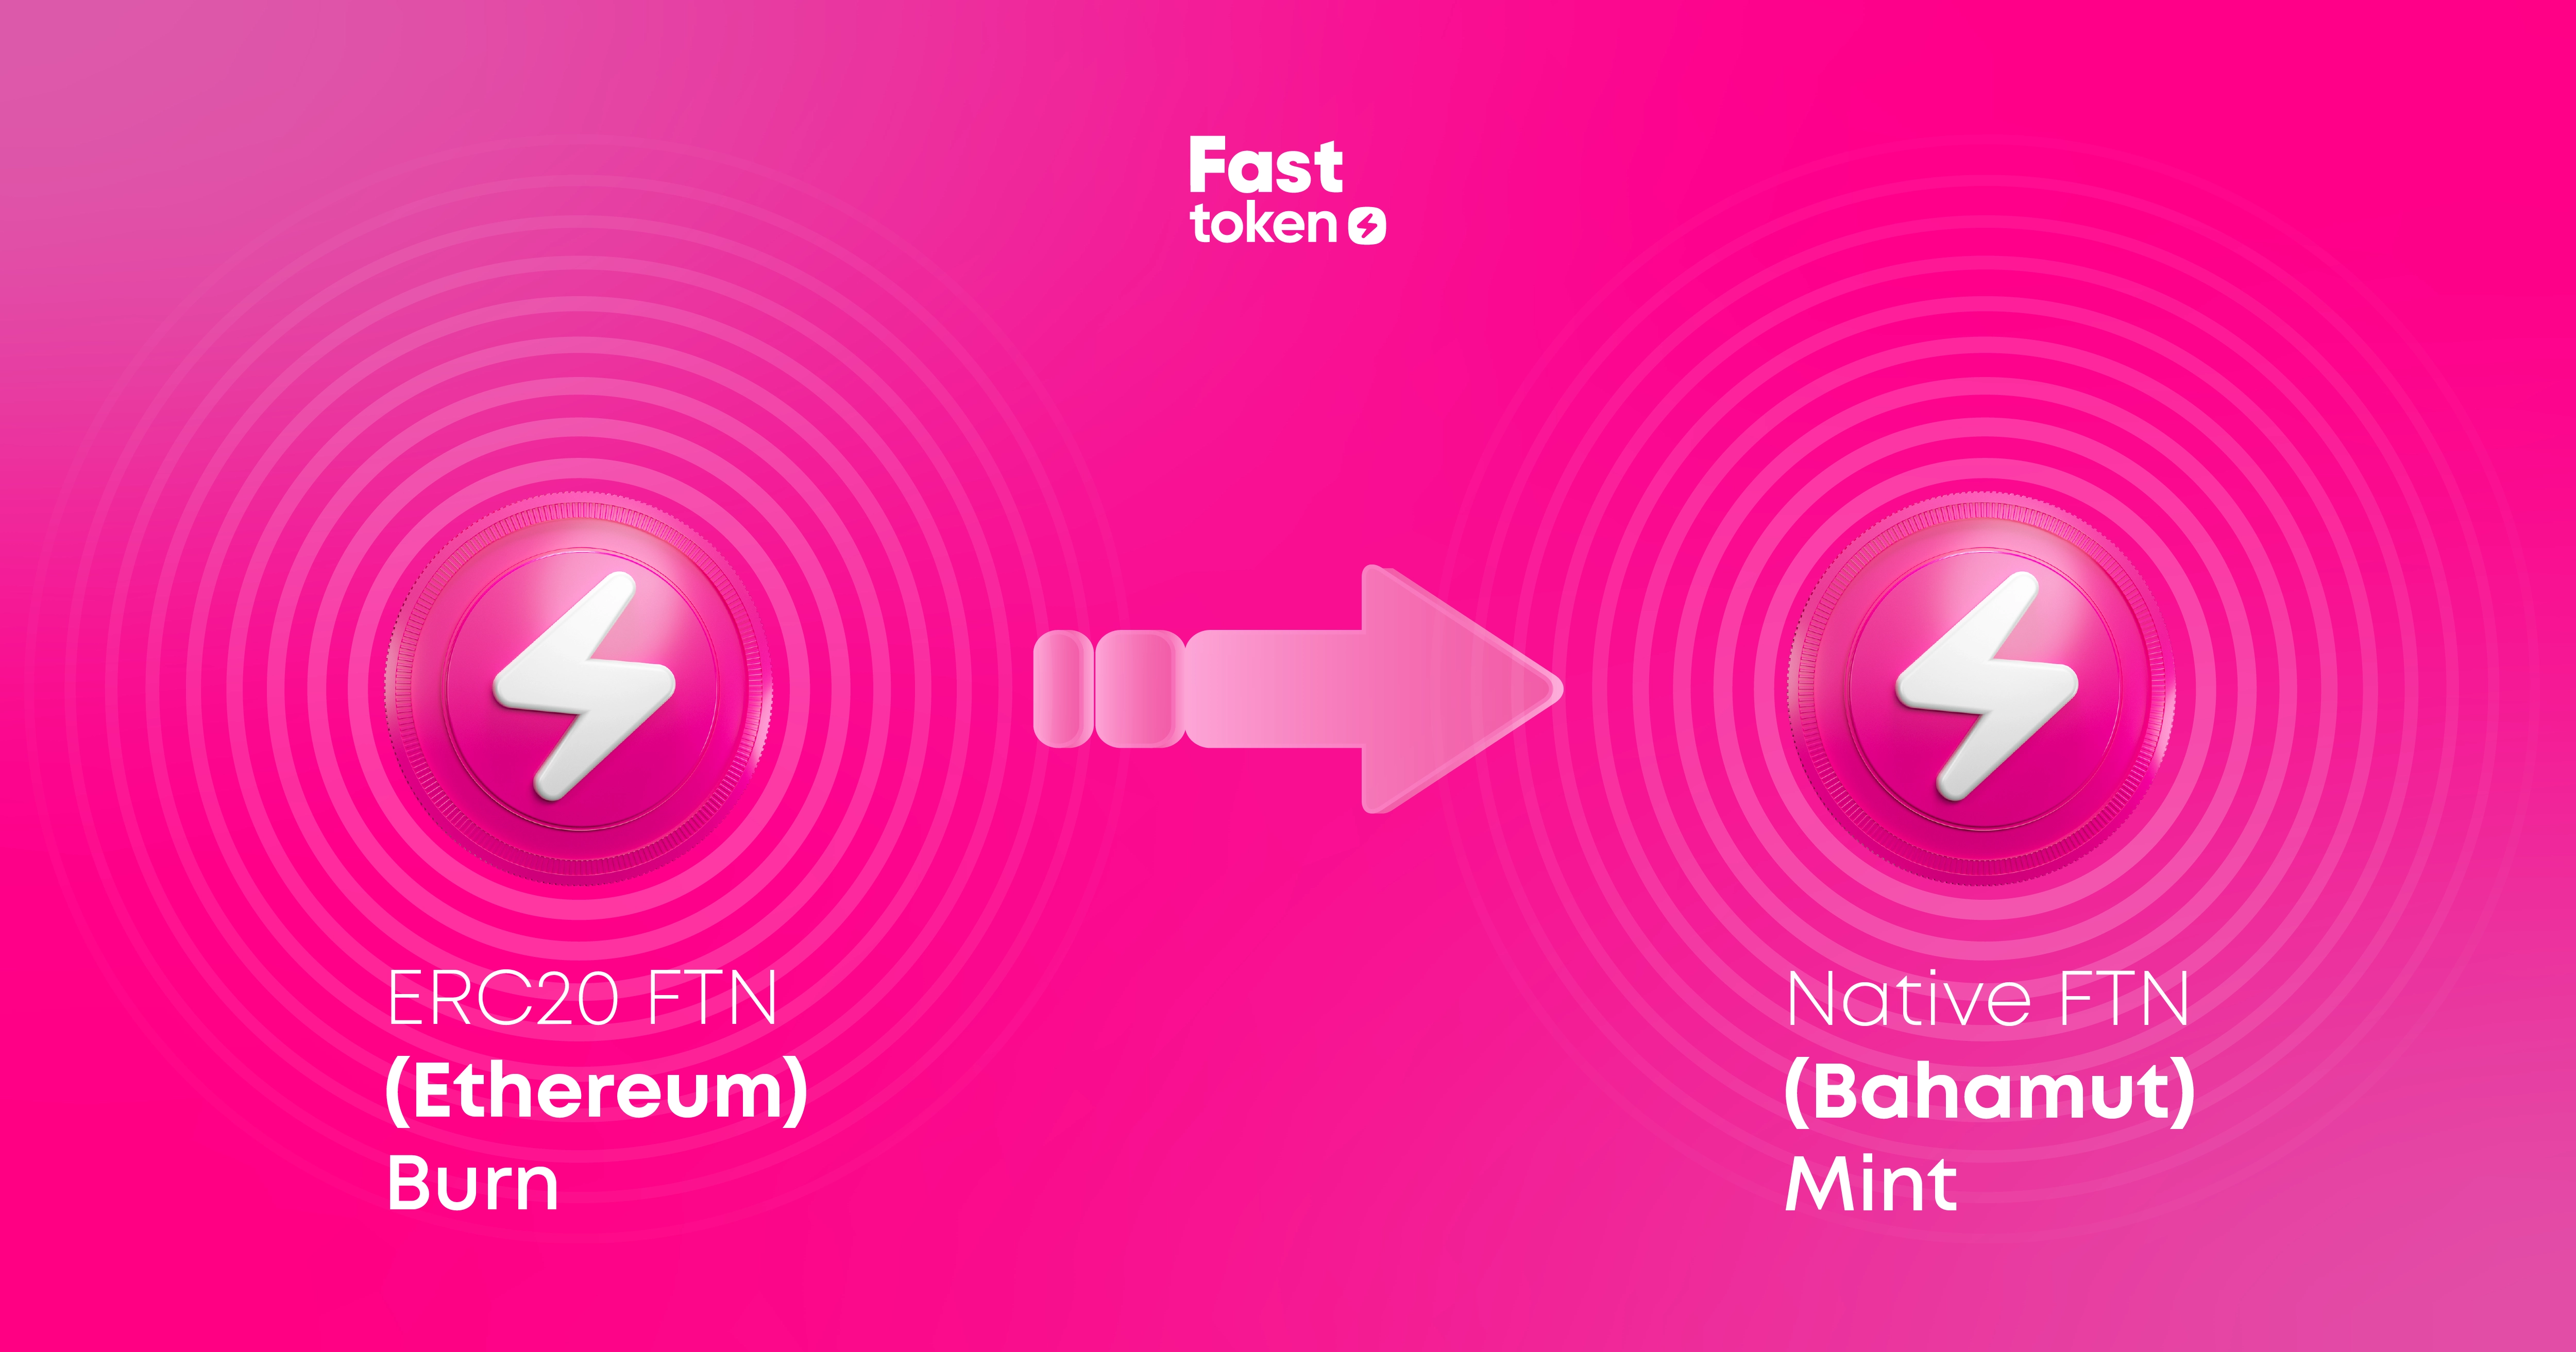 Fastex, Fasttoken (FTN) Sahiplerinin Tokenleri Ethereum Blockchain’den Fastex Chain’e Aktarmasına Olanak Sağlıyor